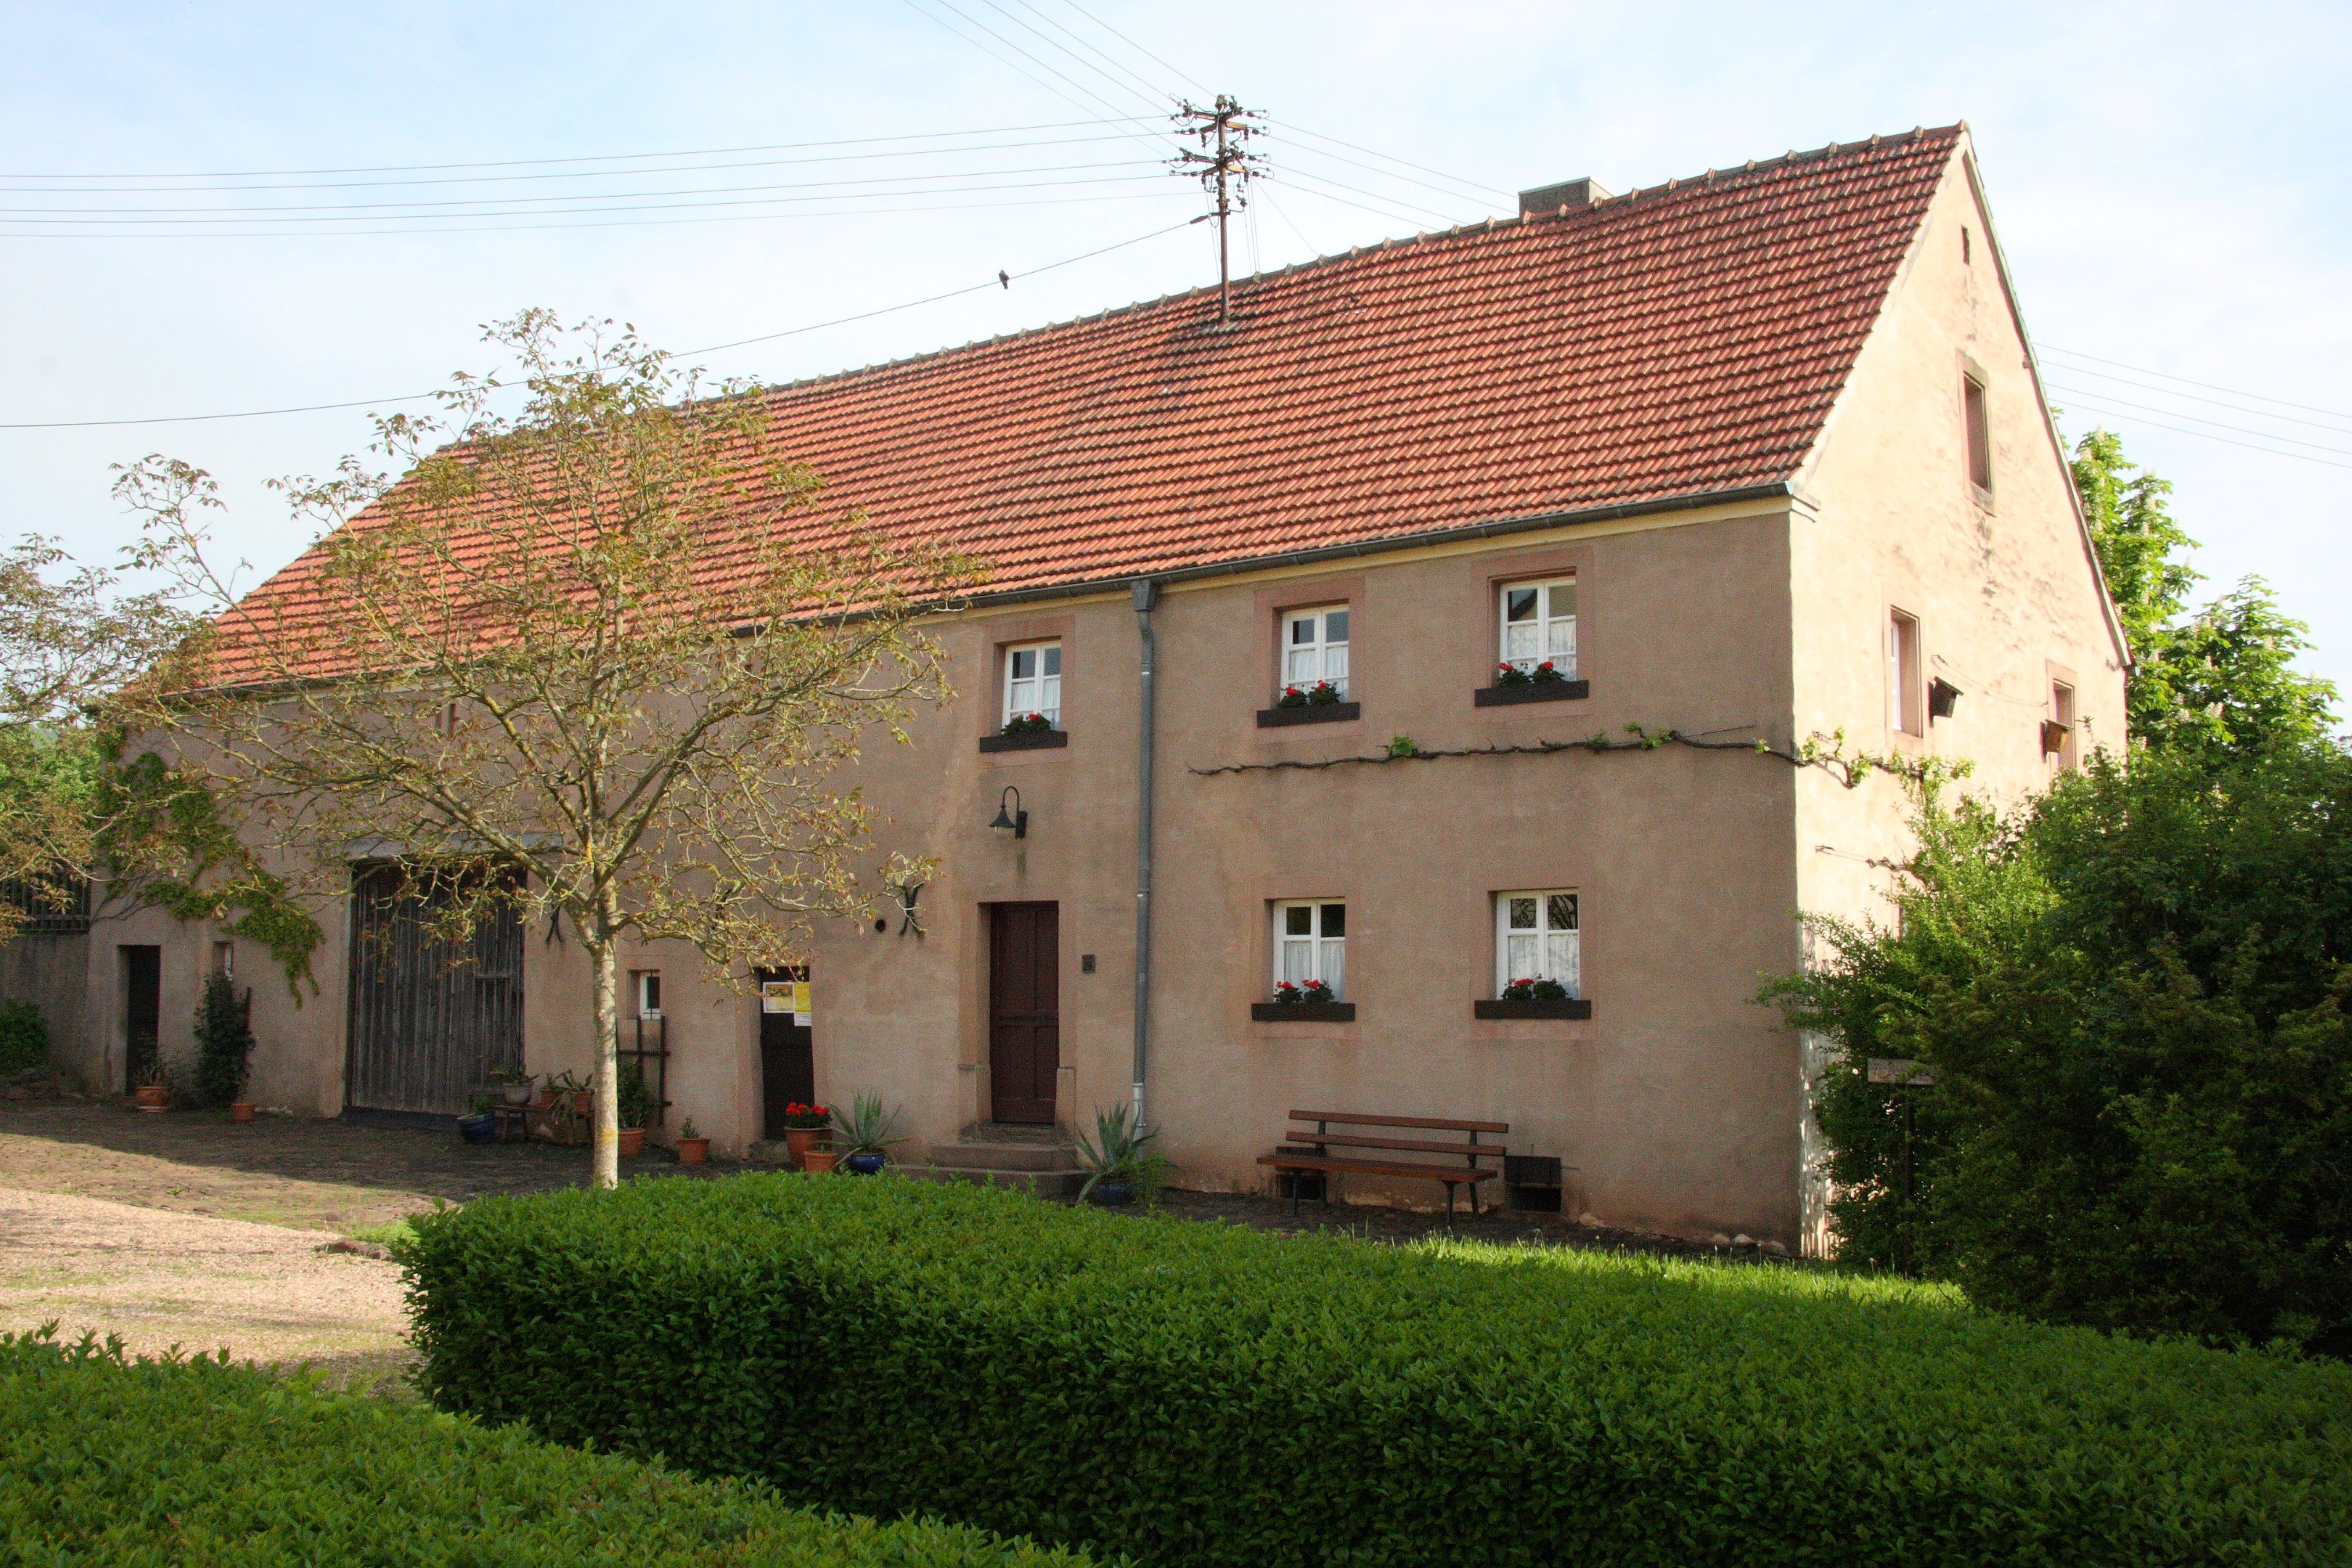 Bauernhaus Habach